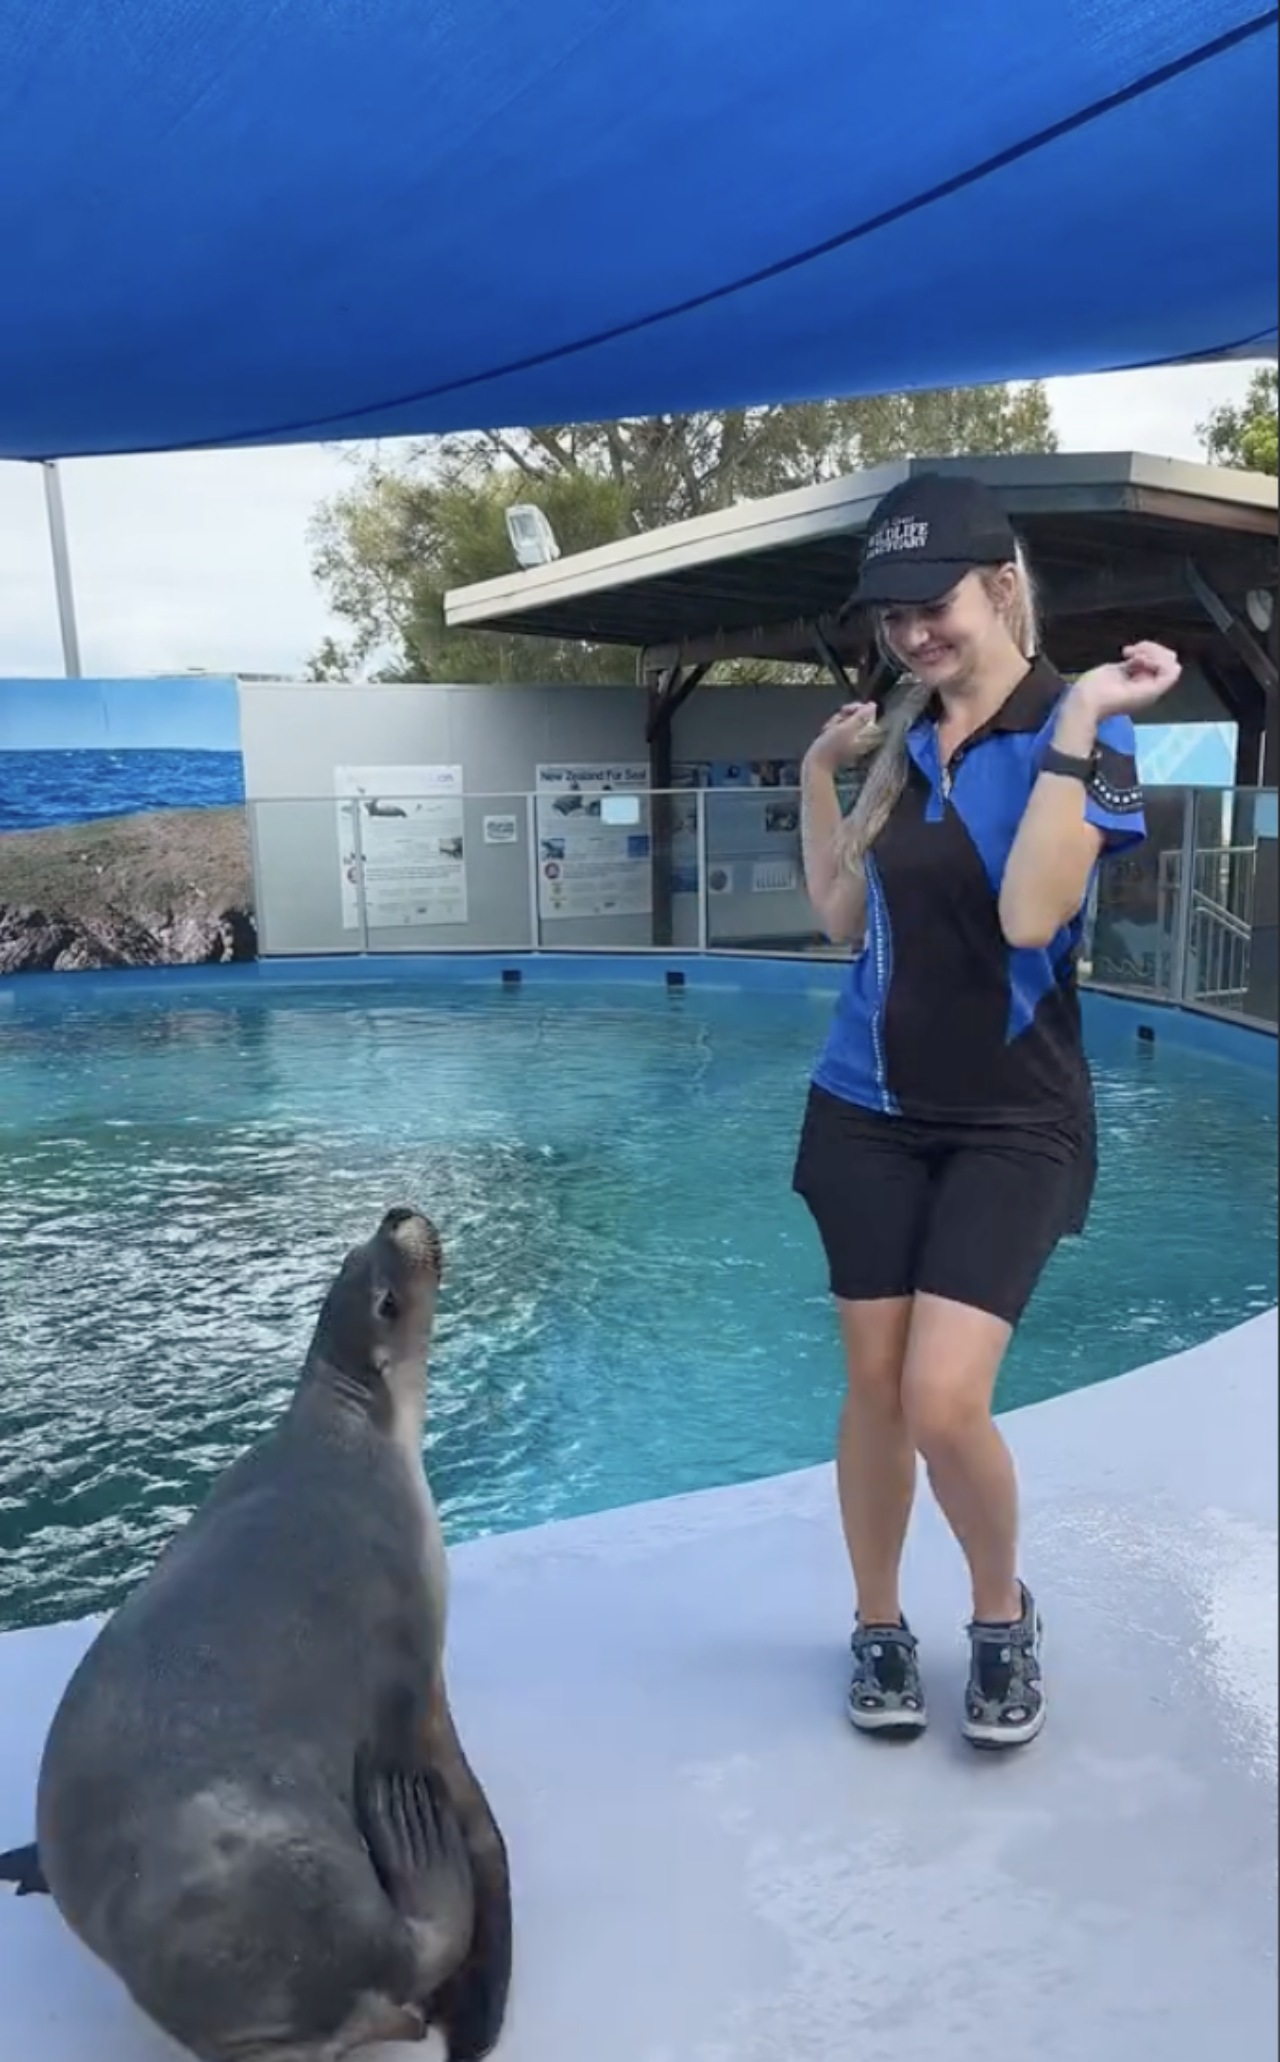 Una foca balla con l'addestratrice e spopola sul web